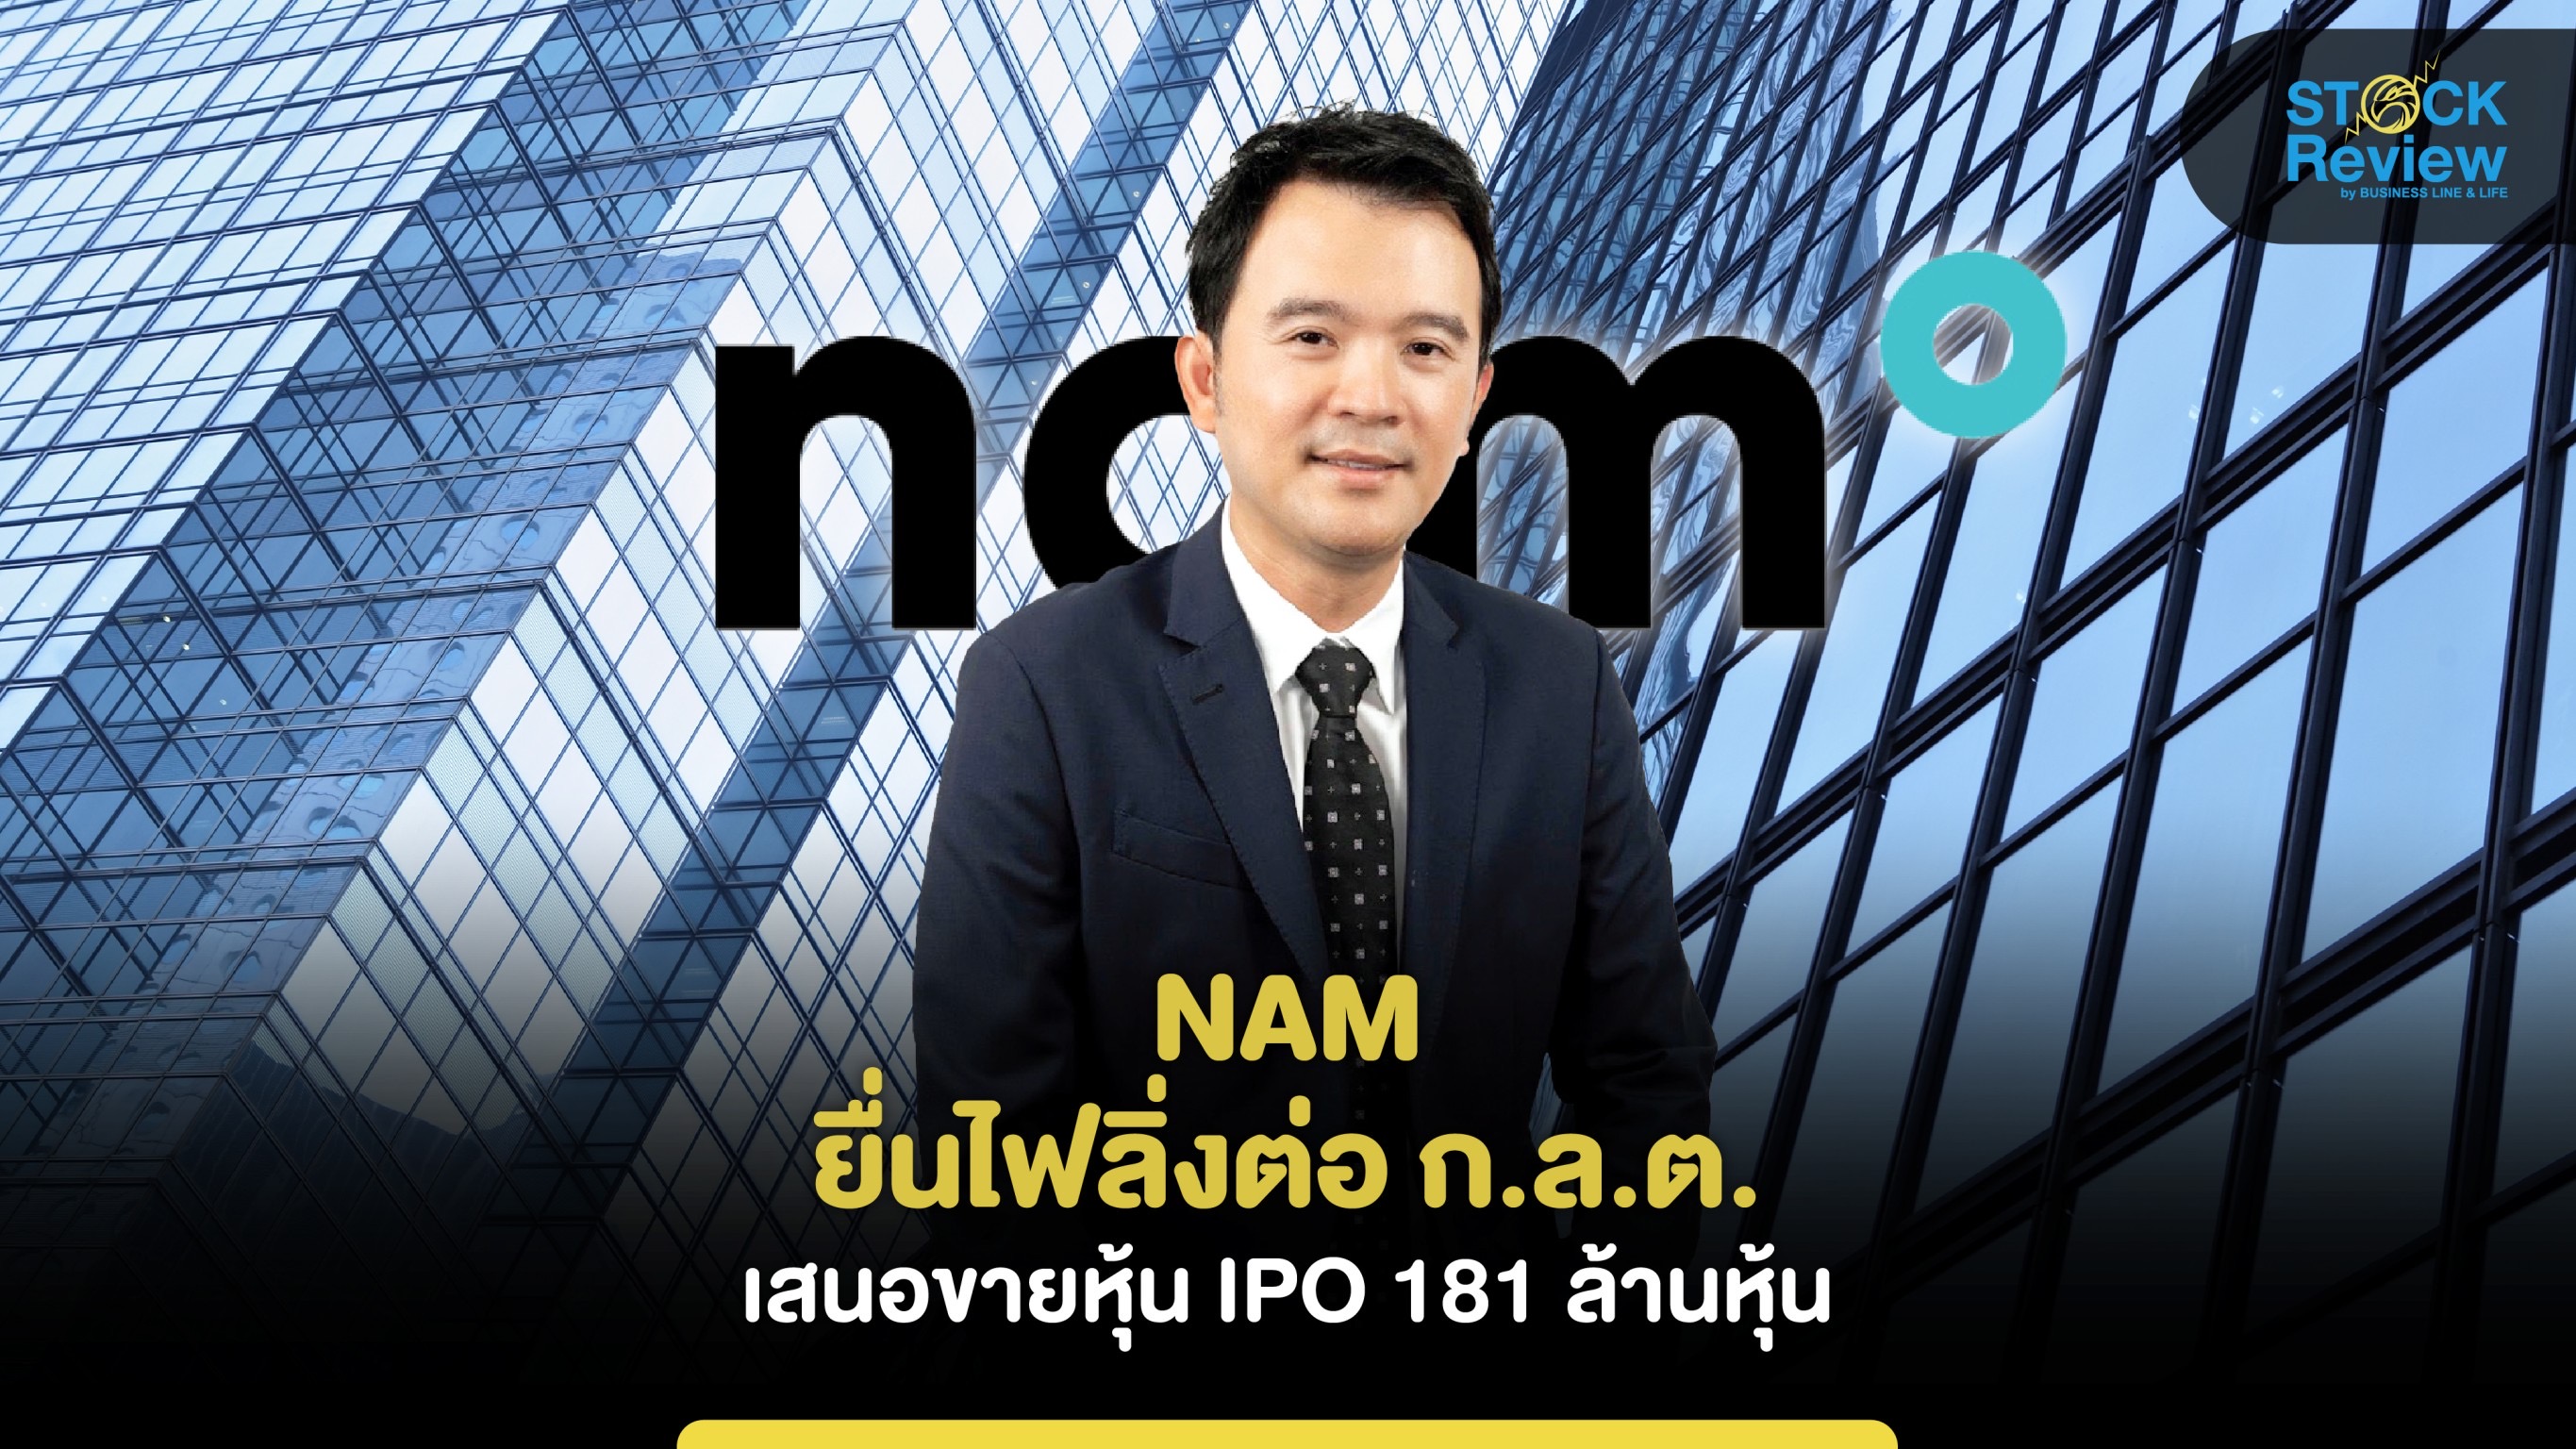 NAM ยื่นไฟลิ่งต่อ ก.ล.ต. เสนอขายหุ้น IPO 181 ล้านหุ้น